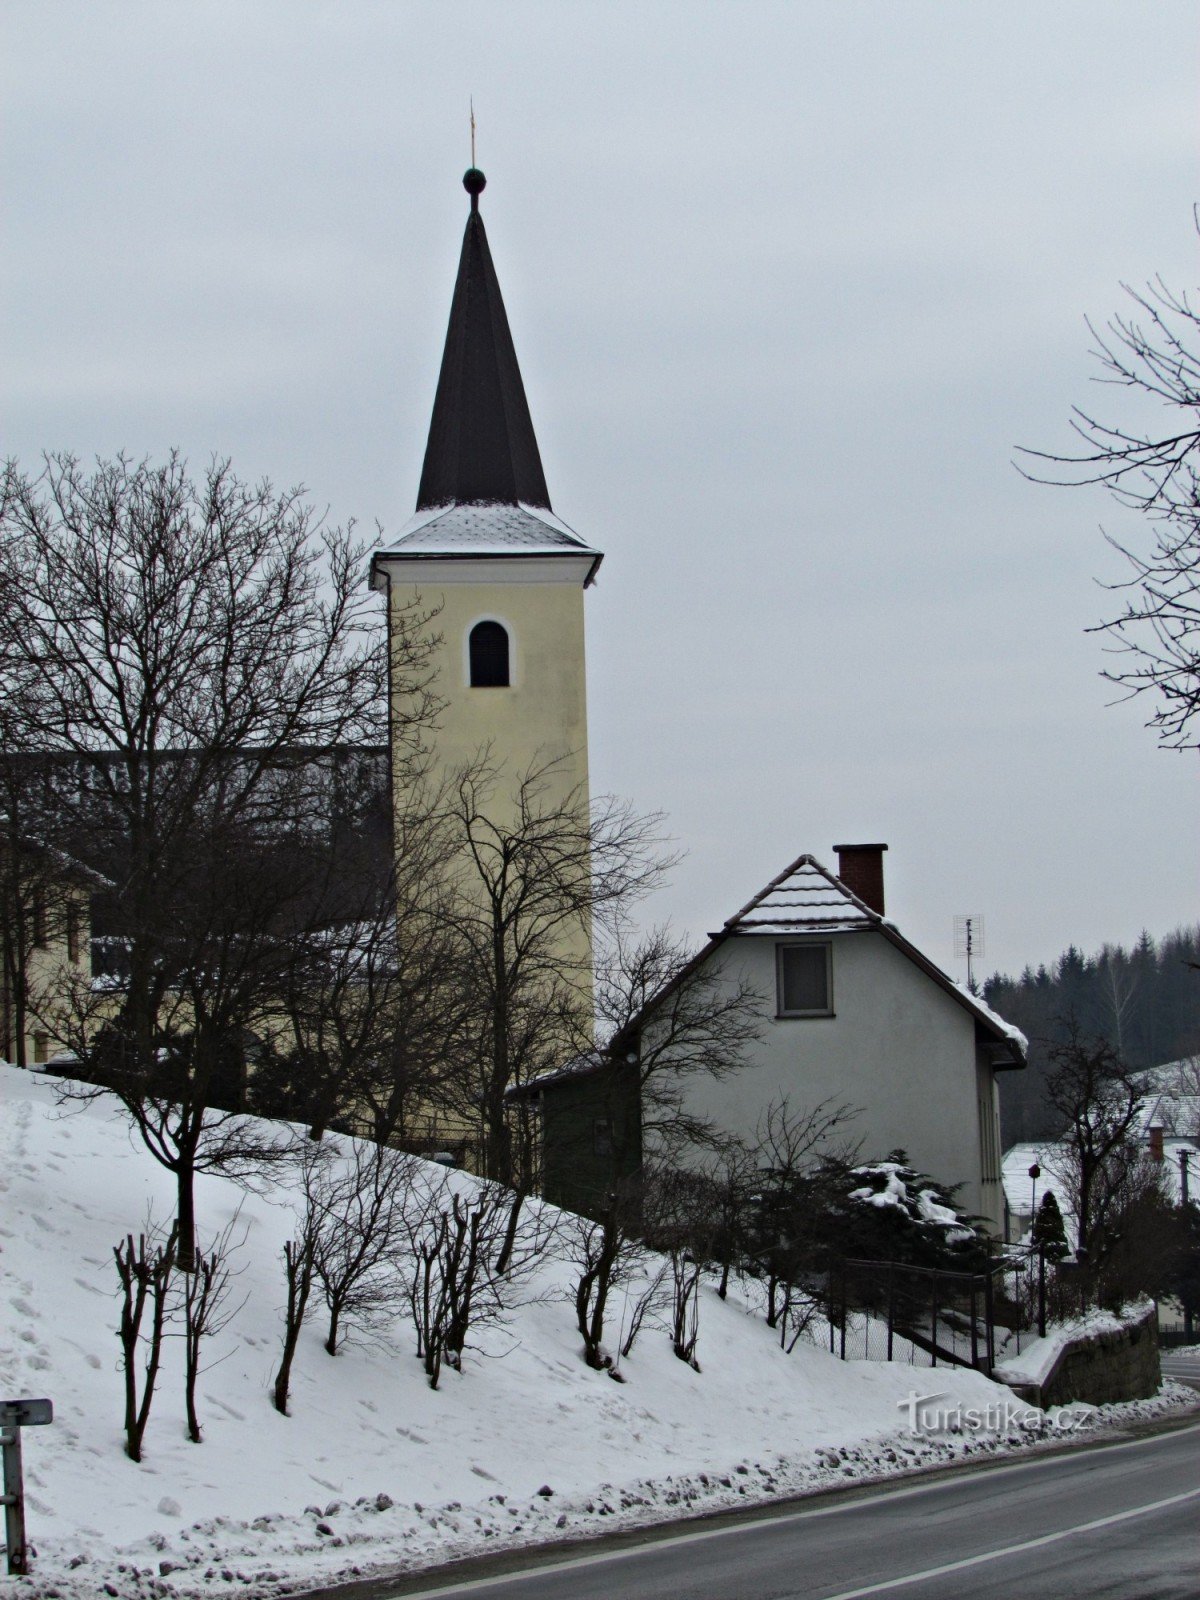 Jasenná - biserica catolică